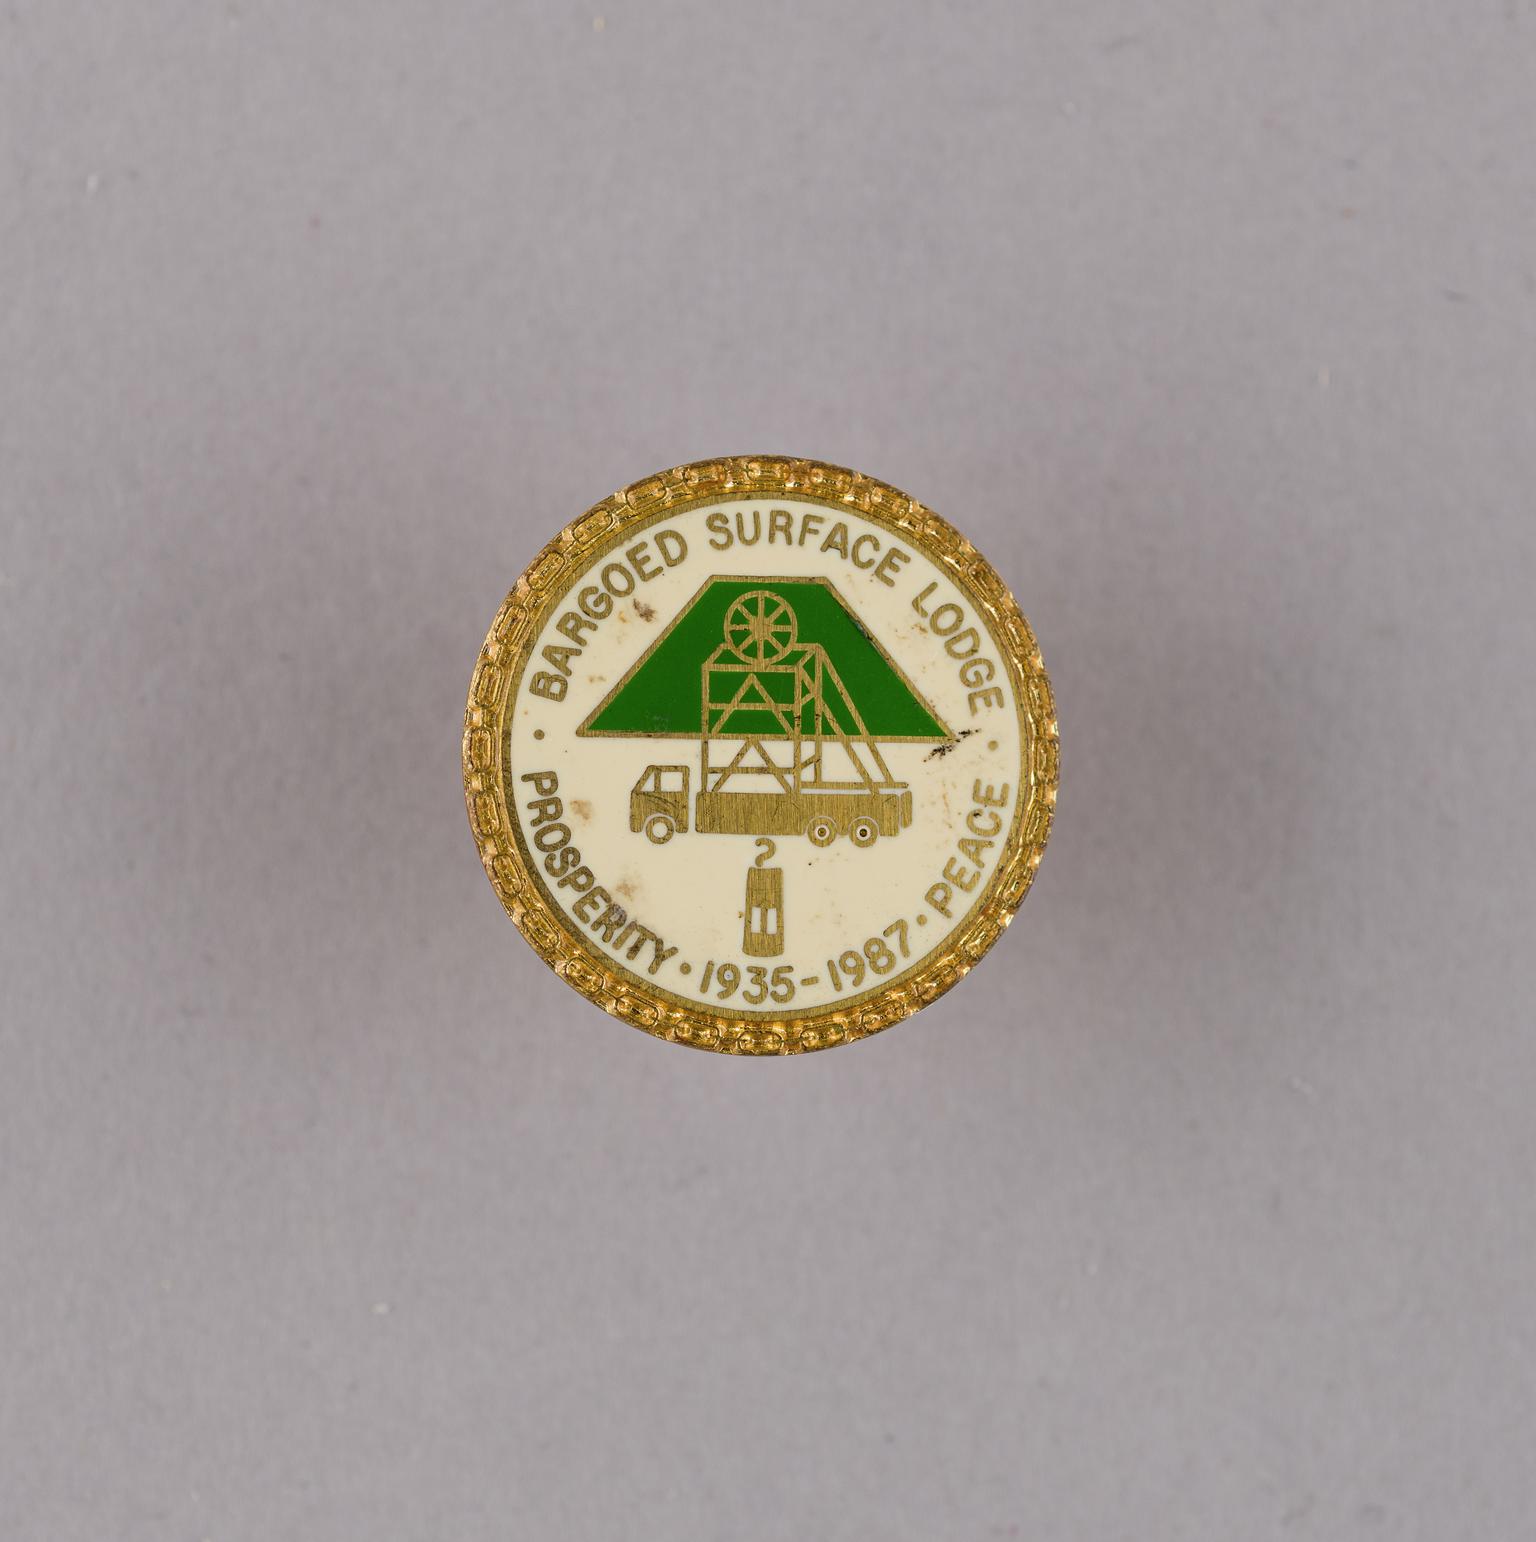 Bargoed Surface Lodge, badge